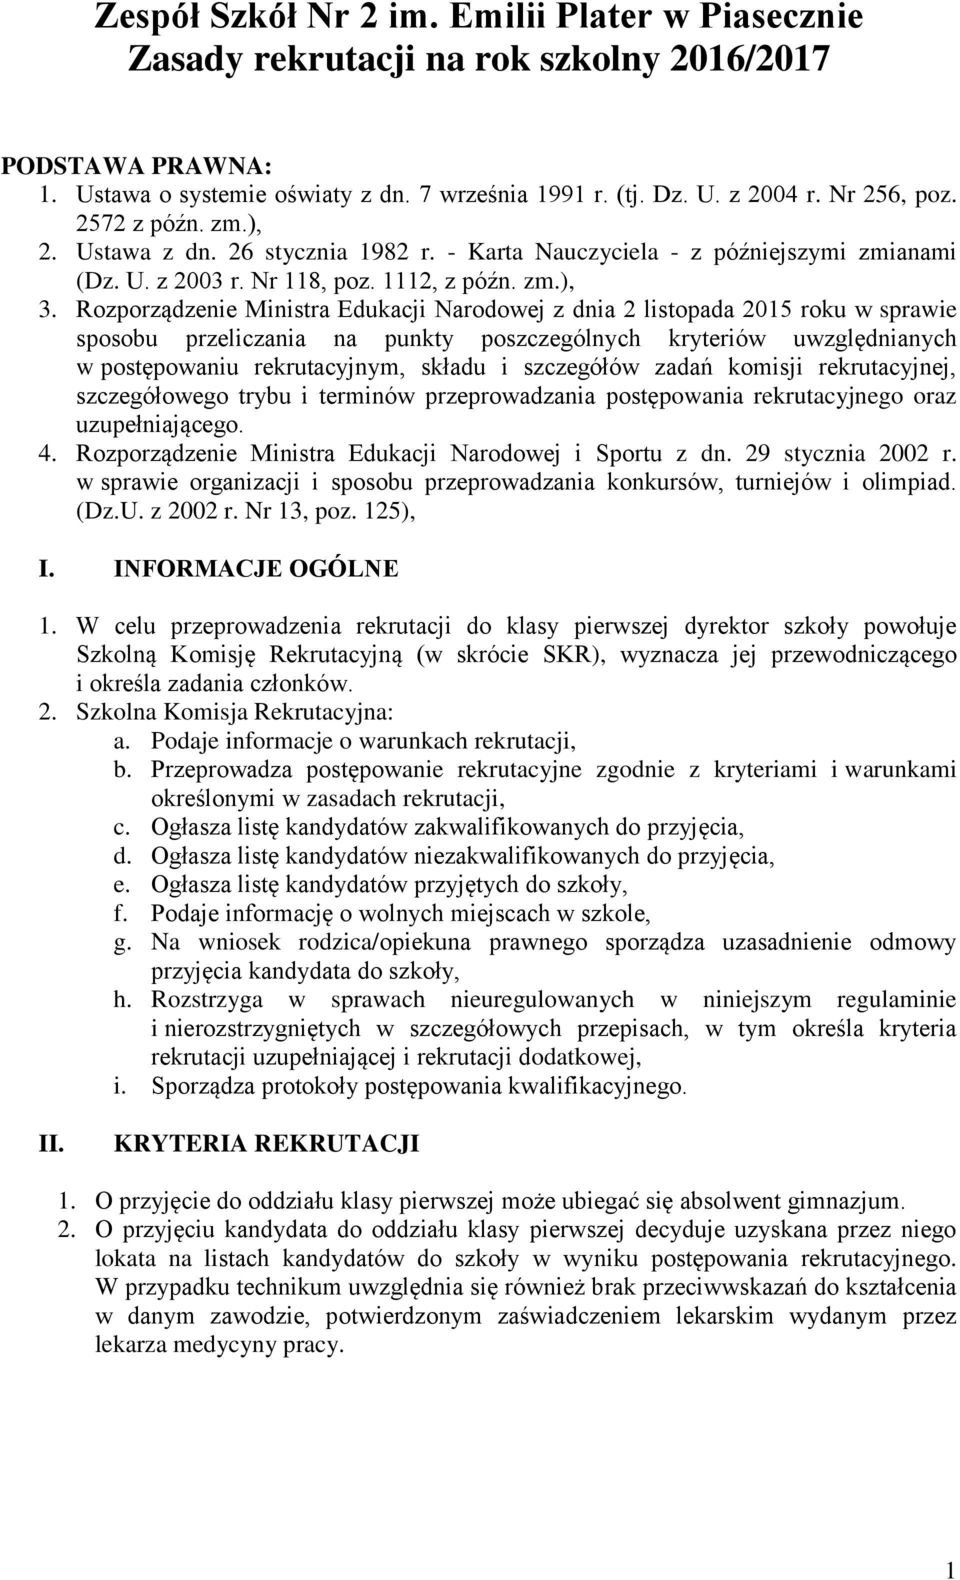 Rozporządzenie Ministra Edukacji Narodowej z dnia 2 listopada 2015 roku w sprawie sposobu przeliczania na punkty poszczególnych kryteriów uwzględnianych w postępowaniu rekrutacyjnym, składu i